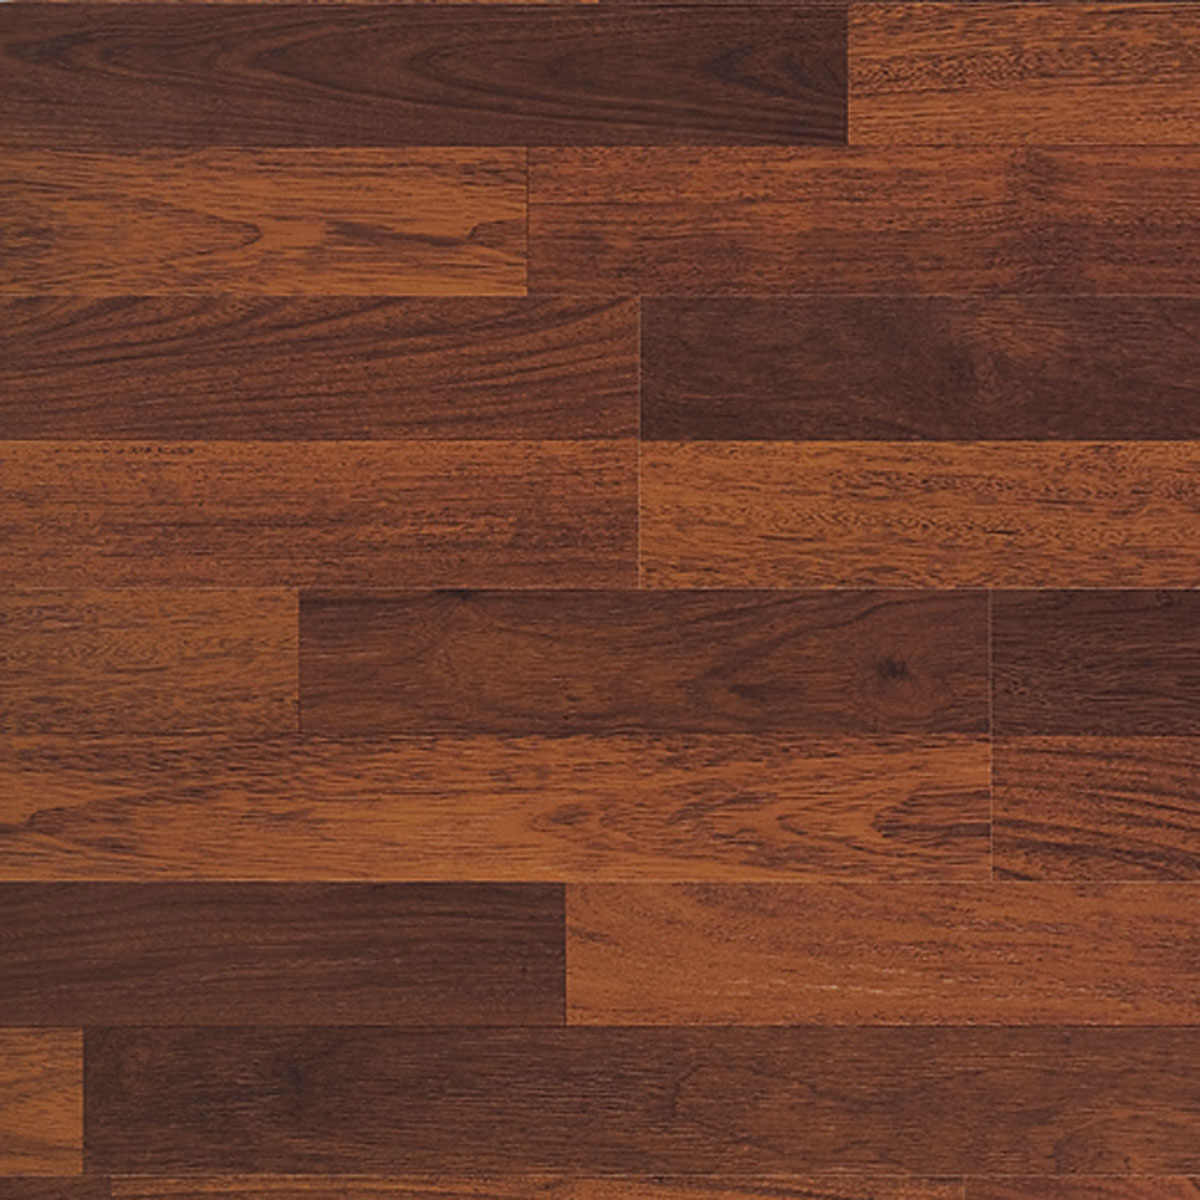 Wooden Floor wallpapers, Photography, HQ Wooden Floor pictures | 4K Wallpapers 2019